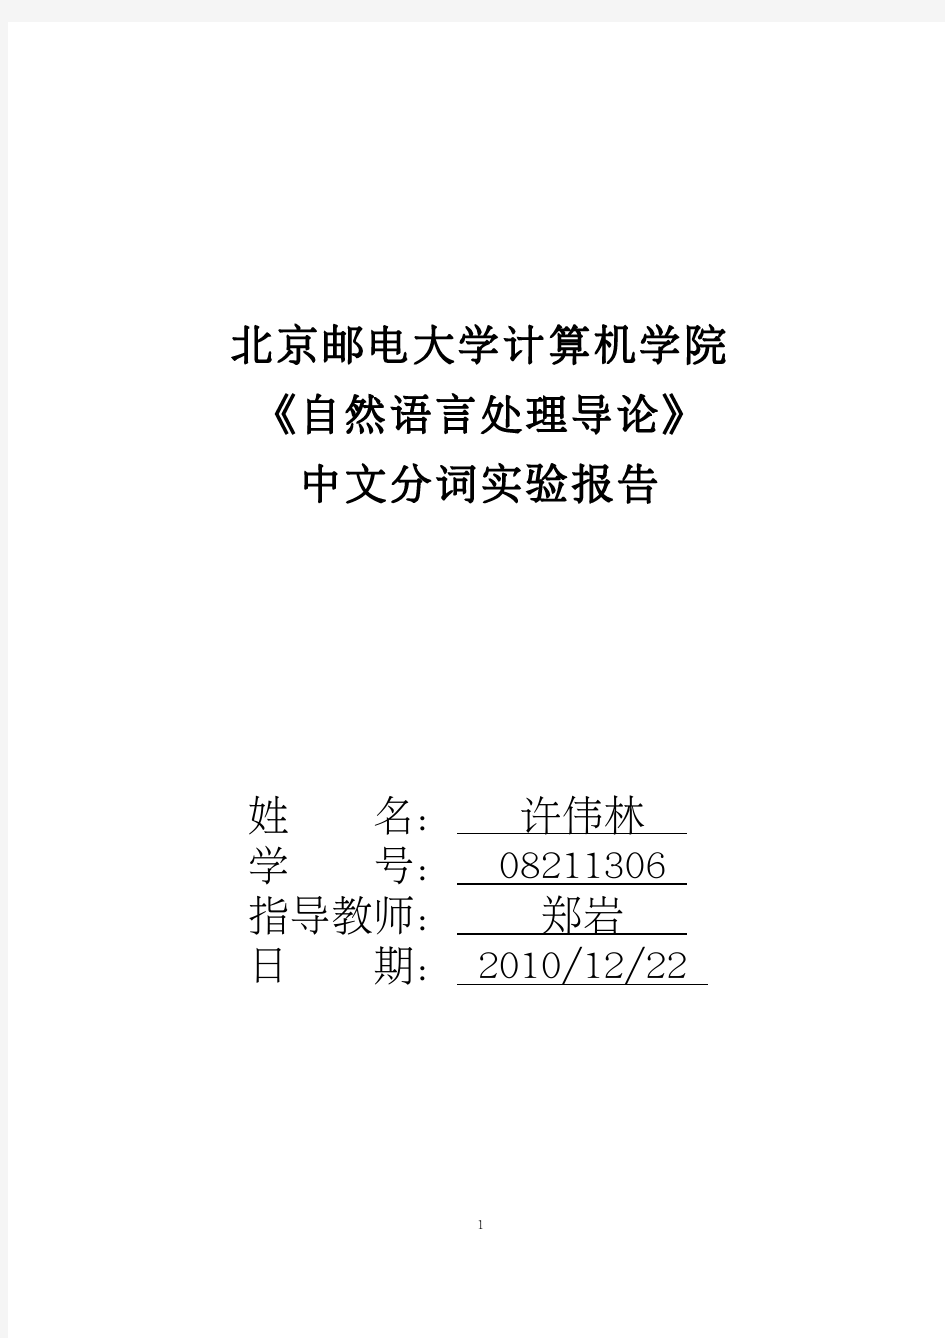 中文分词程序实验报告含源代码